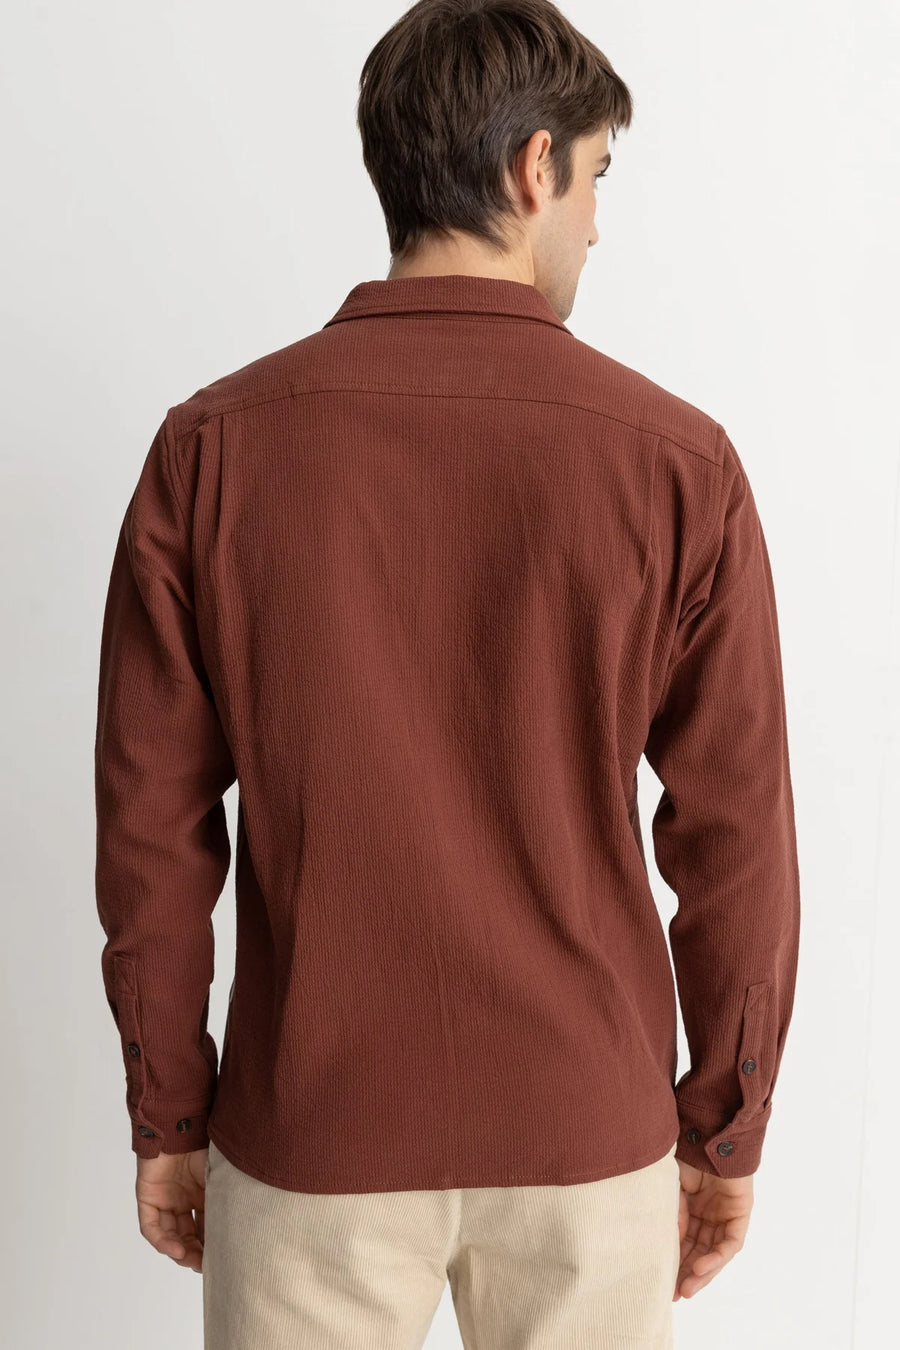 Rhythm Textured Longsleeved Shirt - Clay